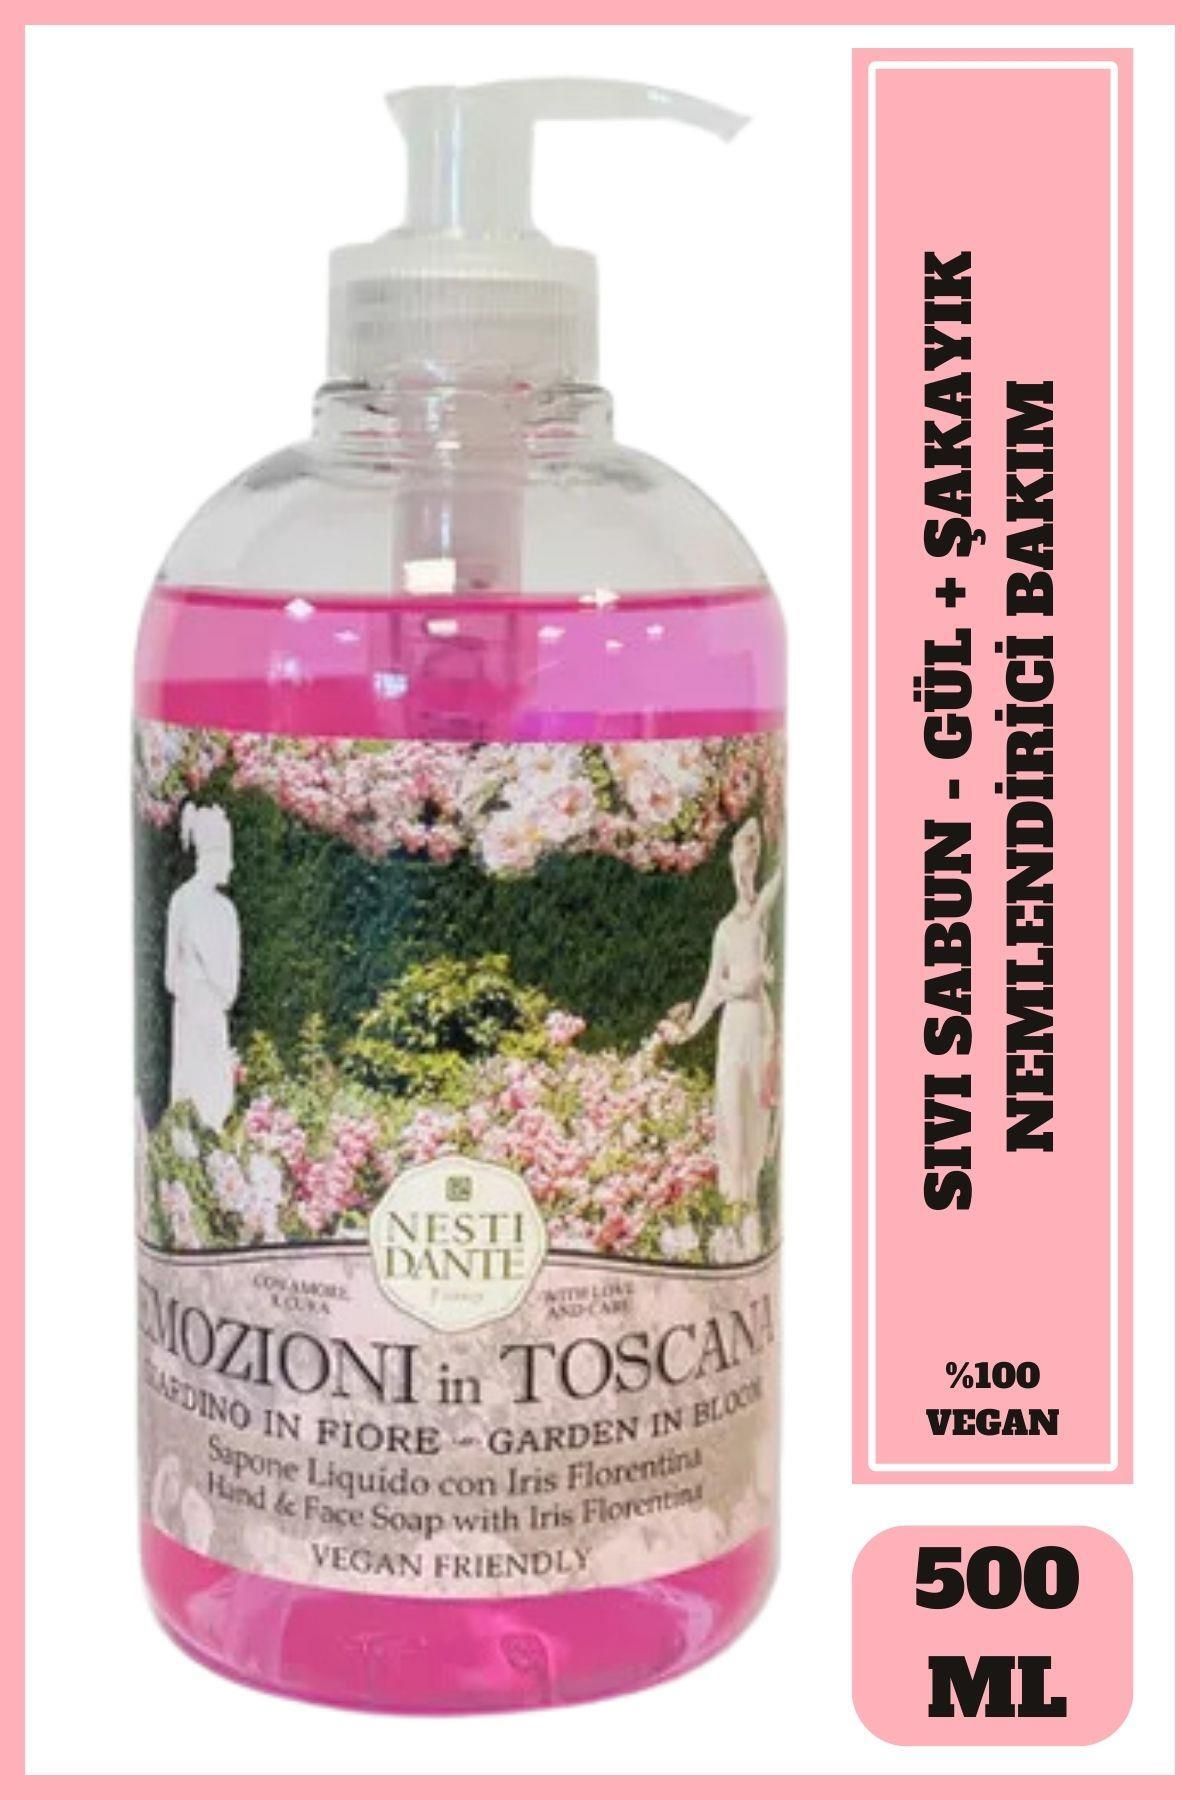 Nesti Dante Sıvı Sabun Emozioni in Toscana Çiçeksi Bahçe Arındırıcı Vegan Bakım 500 ml